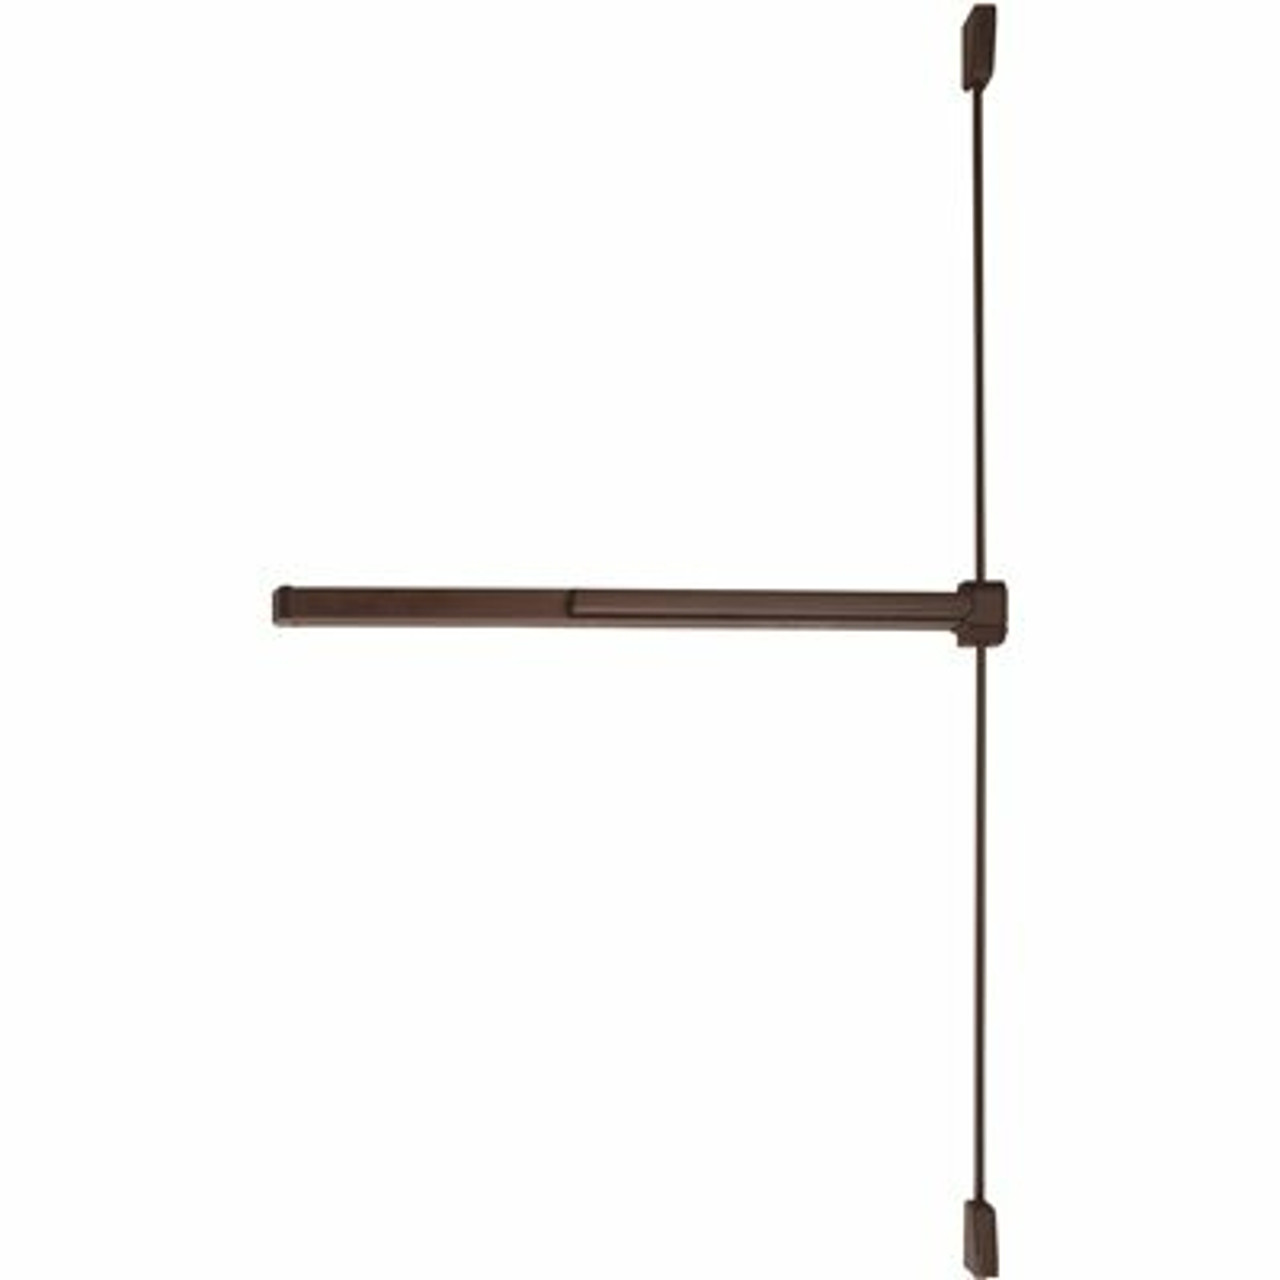 Von Duprin Grade-1 Dark Bronze Surface Vertical Rod Exit Device, Non-Handed, Exit Only - 310013244